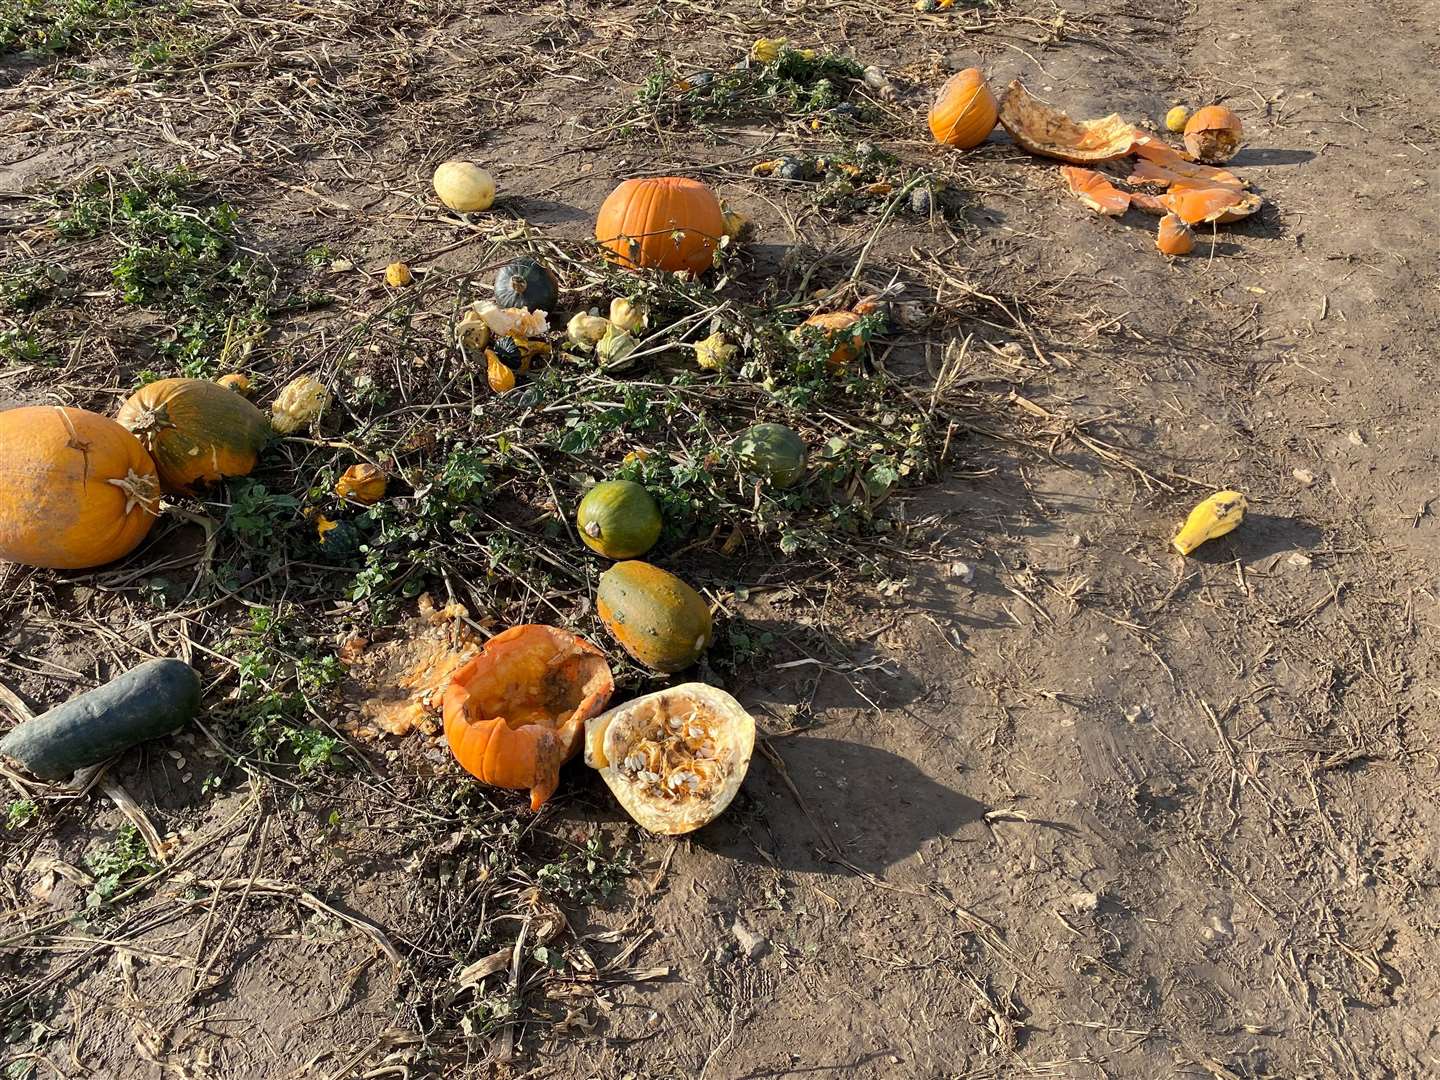 A lack of pumpkins at Pumpkin Moon, Bapchild, for Halloween